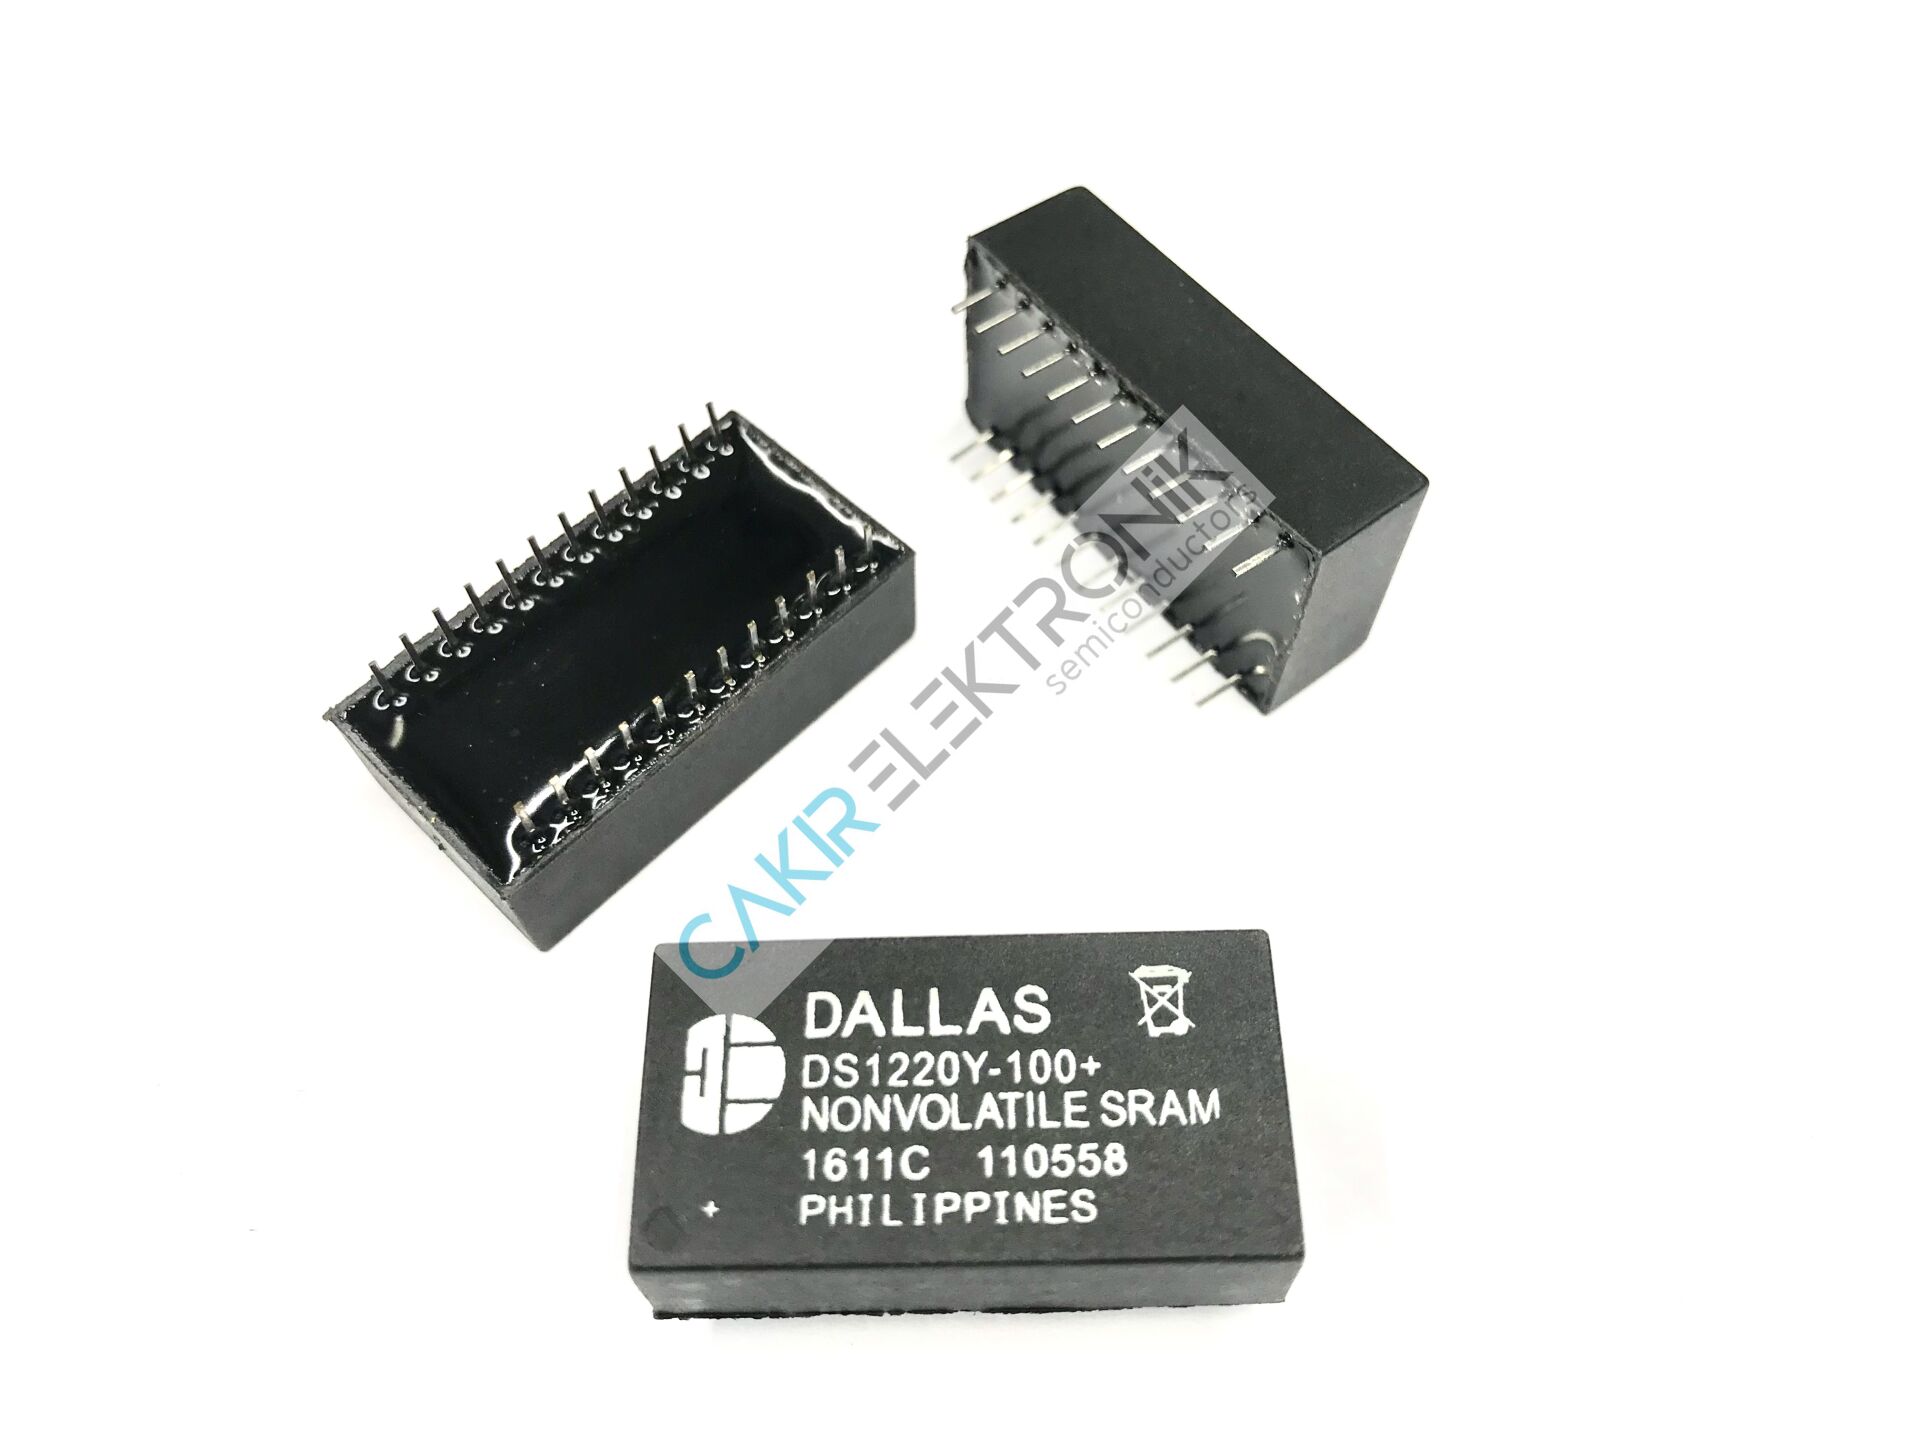 DS1220Y-100 - DS1220Y-100+ 16k Nonvolatile SRAM